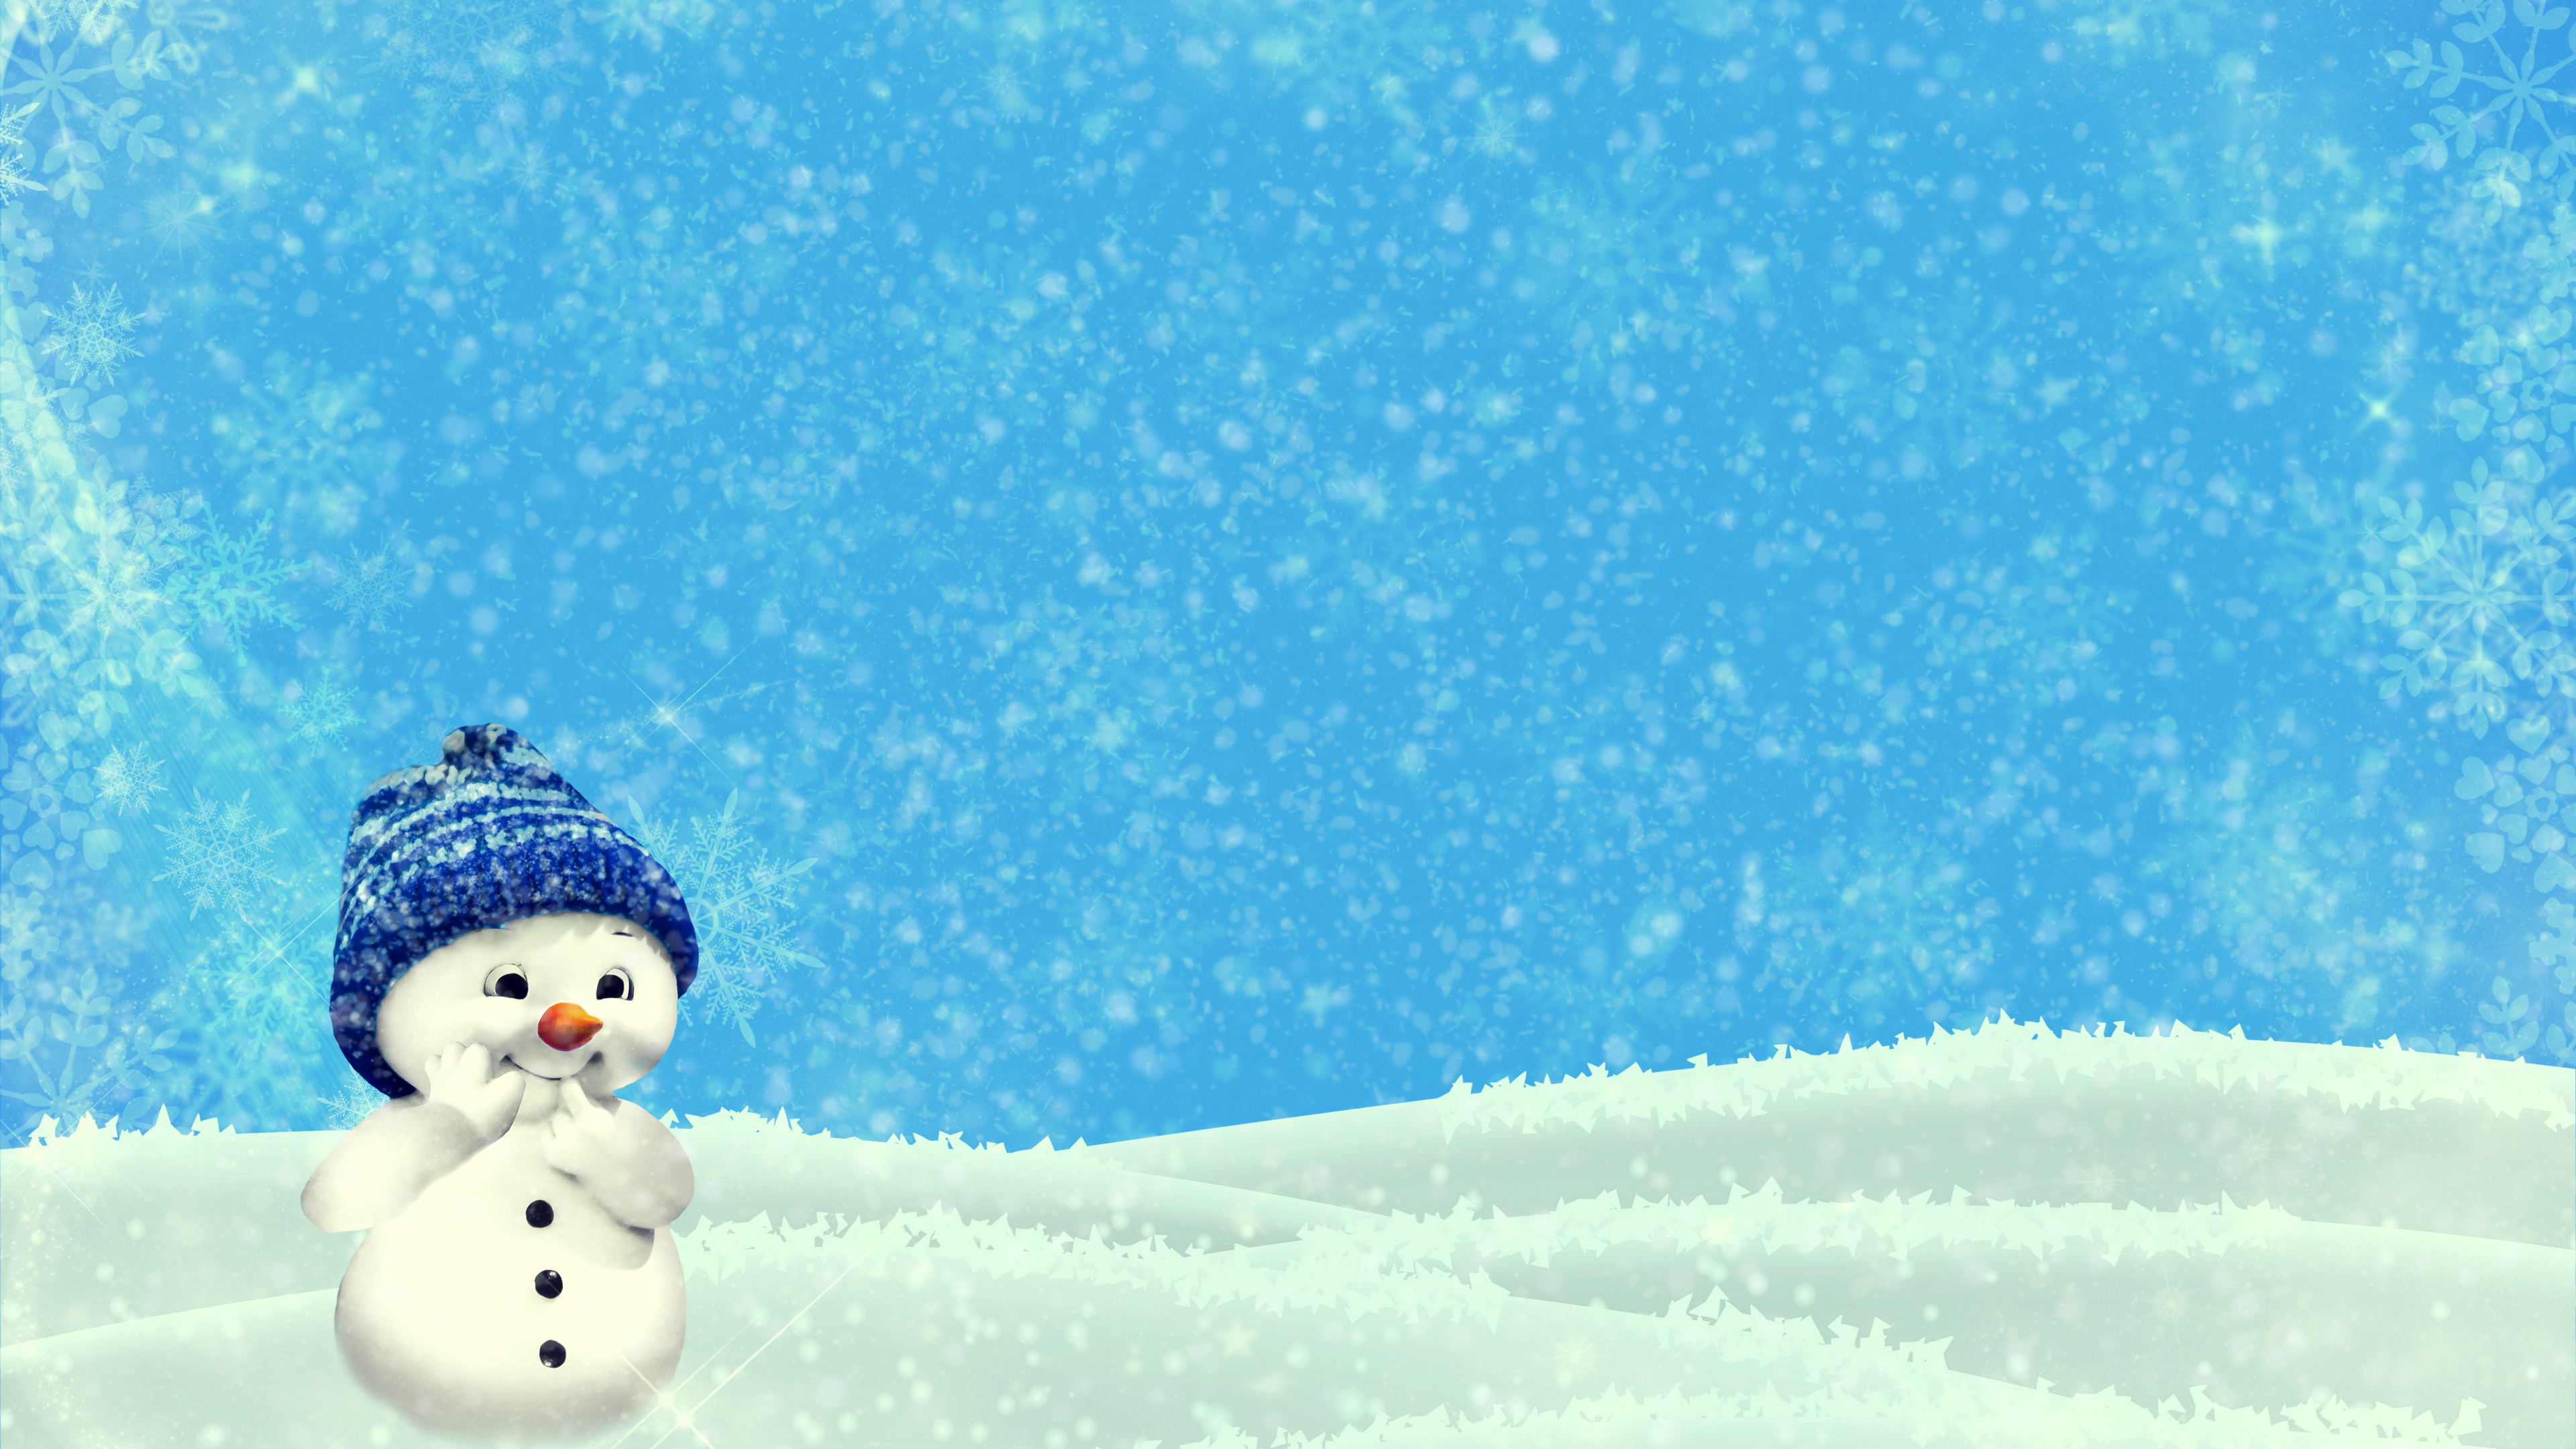 雪人, 圣诞节那天, 冬天, 冻结, 雪花 壁纸 3840x2160 允许